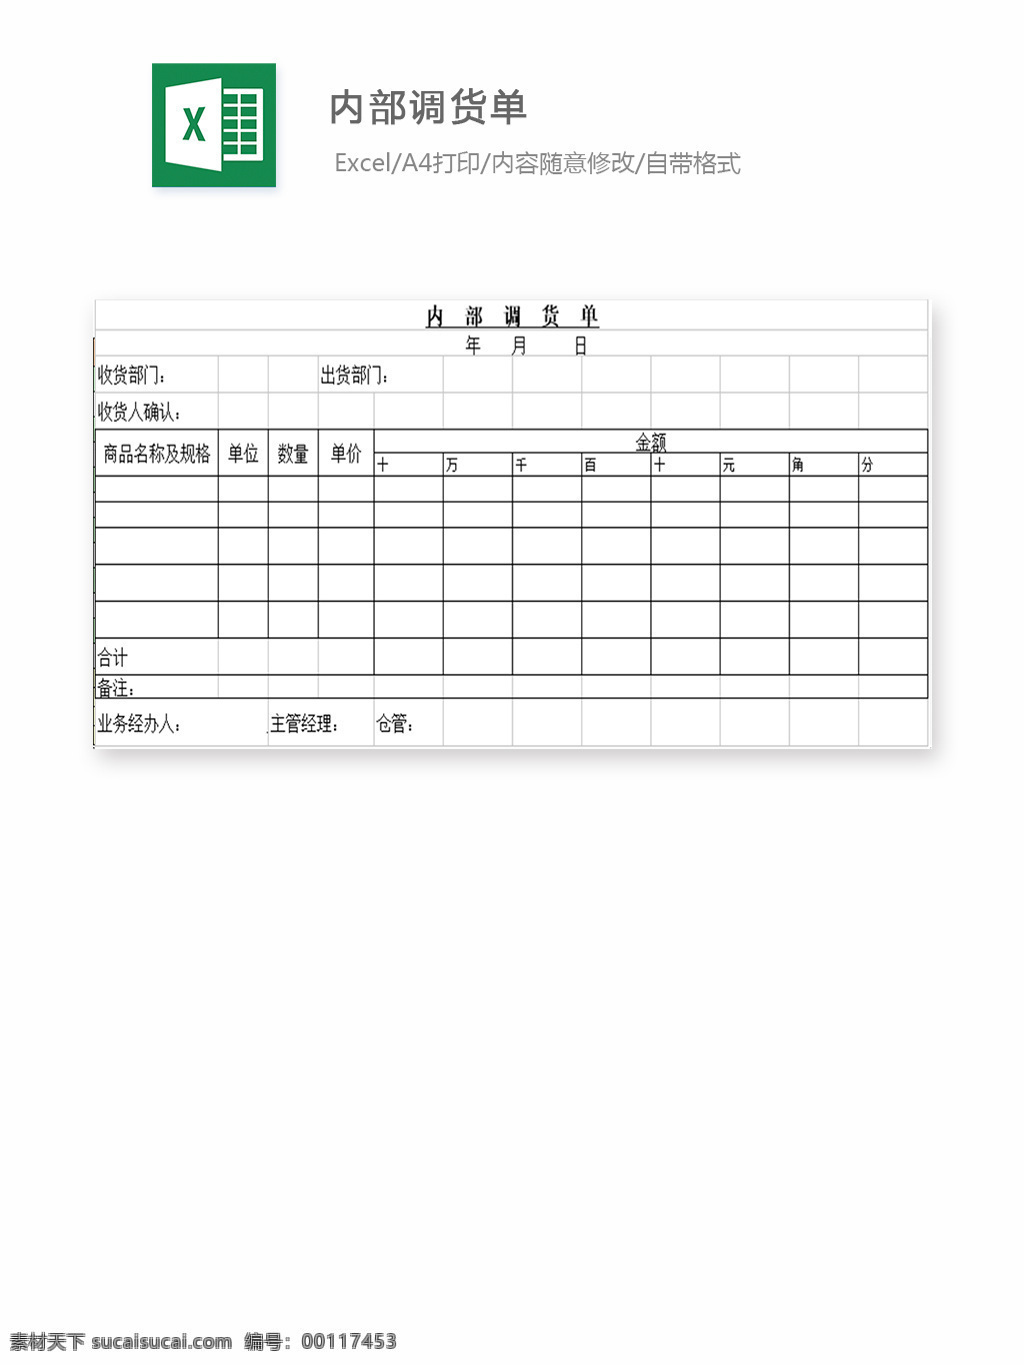 内部调货单 表格 表格模板 表格设计 图表 调货单 配料单 进销存